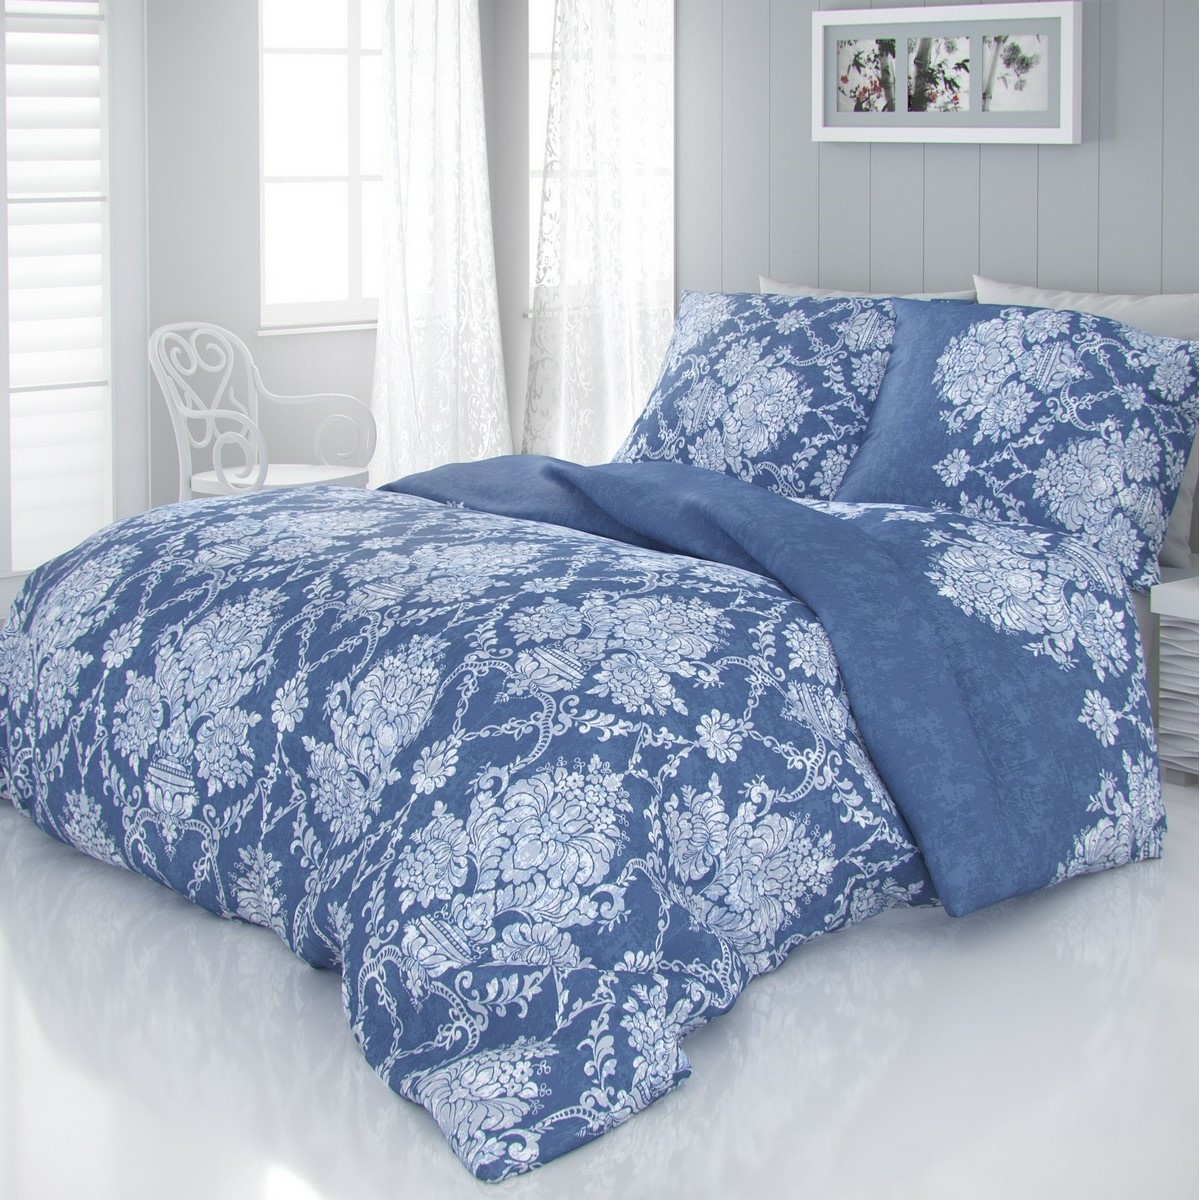 Lenjerie pat satin Vintage albastră, 140 x 200 cm, 70 x 90 cm e4home.ro